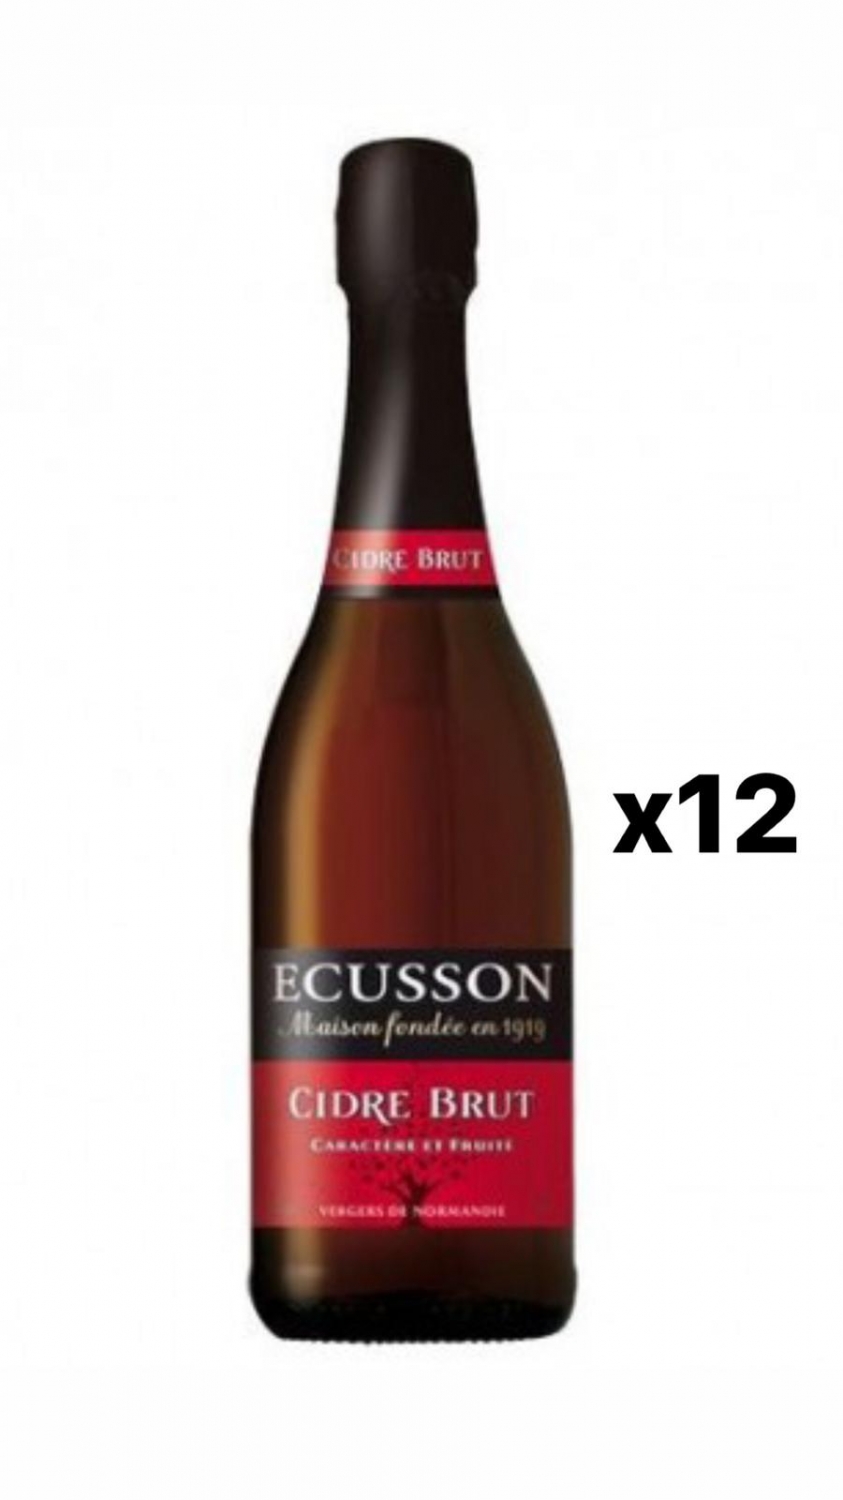 Ecusson Cidre Brut 5% 12x75cl